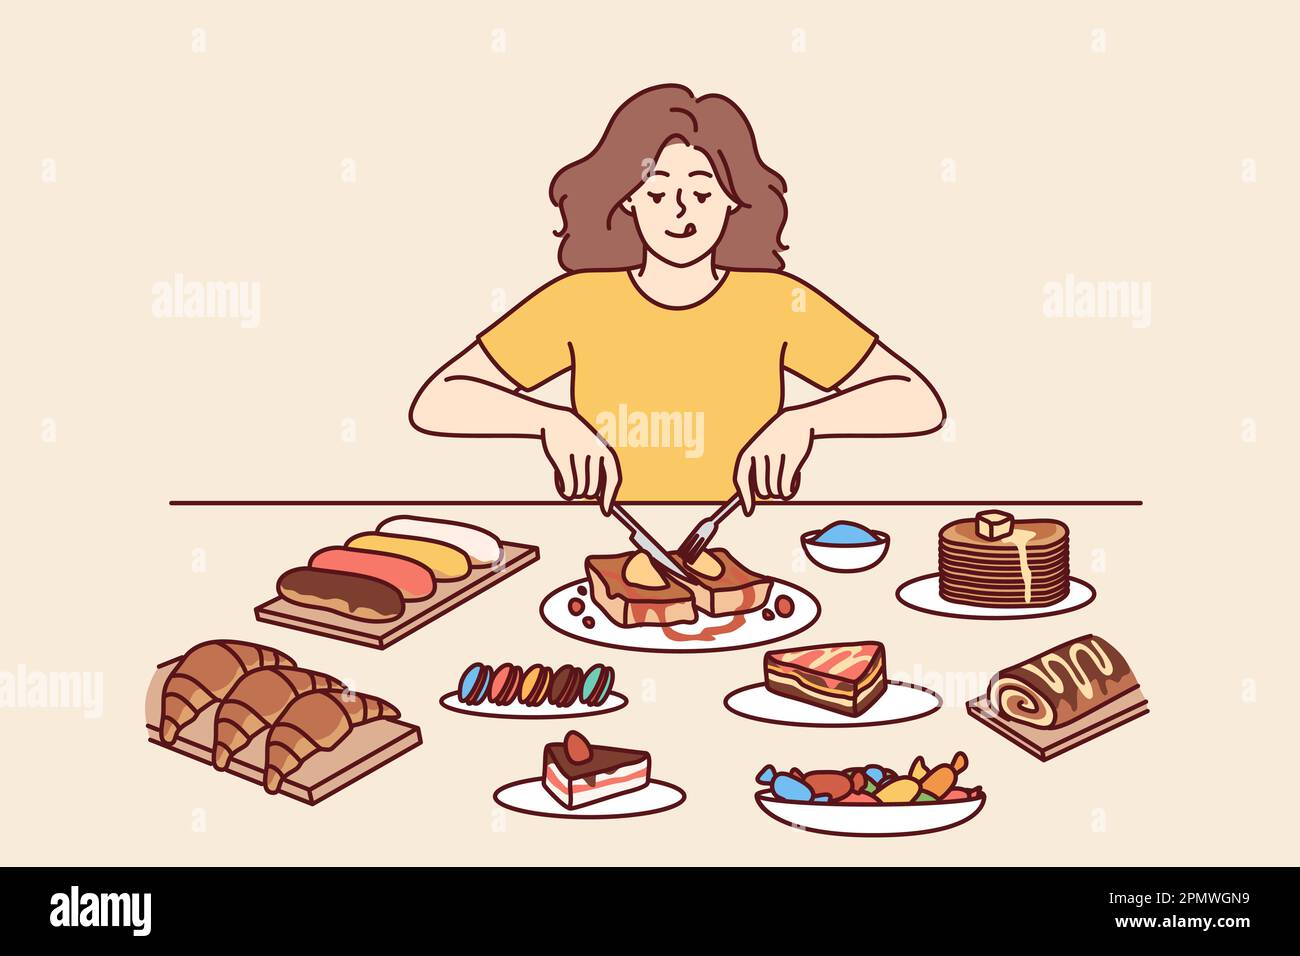 Frau isst zu viel Desserts am Tisch mit süßen, kalorienreichen Speisen, schmeckt Kuchen und Croissants und vergisst die Ernährung. Das Mädchen isst Nachspeisen während des Betrugs, ohne Angst vor Gewichtszunahme Stock Vektor